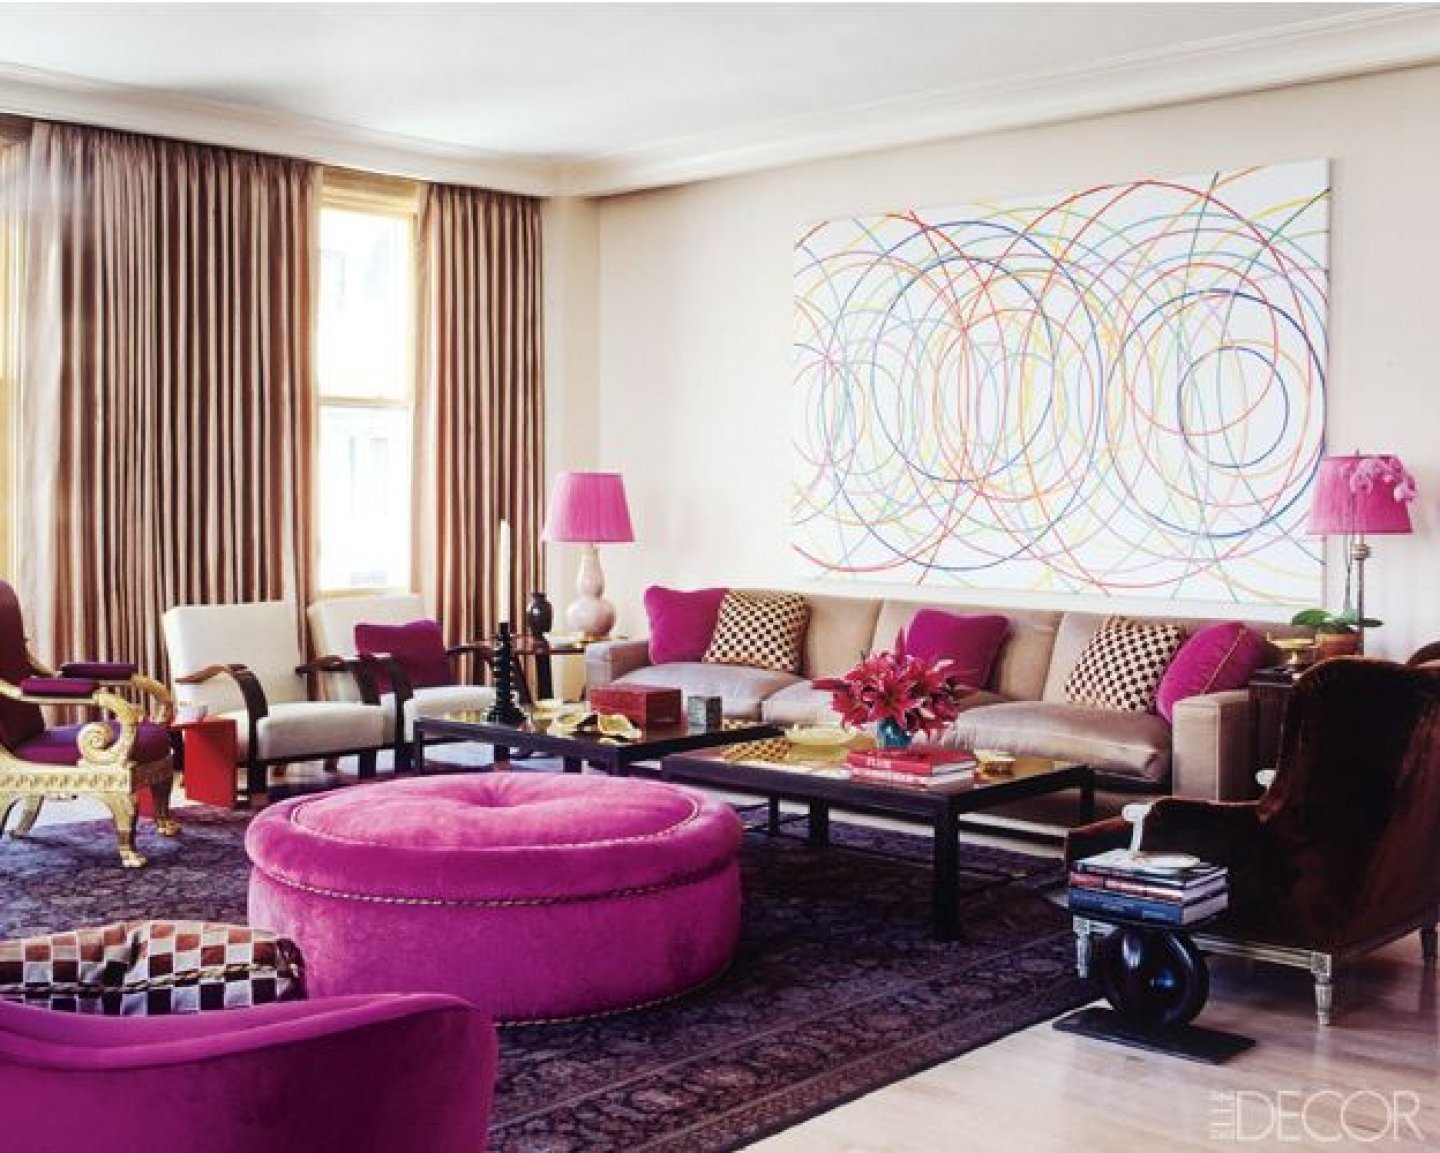 Квартира цветной. Яркие цвета в интерьере. Сочетание цветов в интерьере гостиной. Модные тенденции в интерьере. Современный интерьер гостиной яркий.